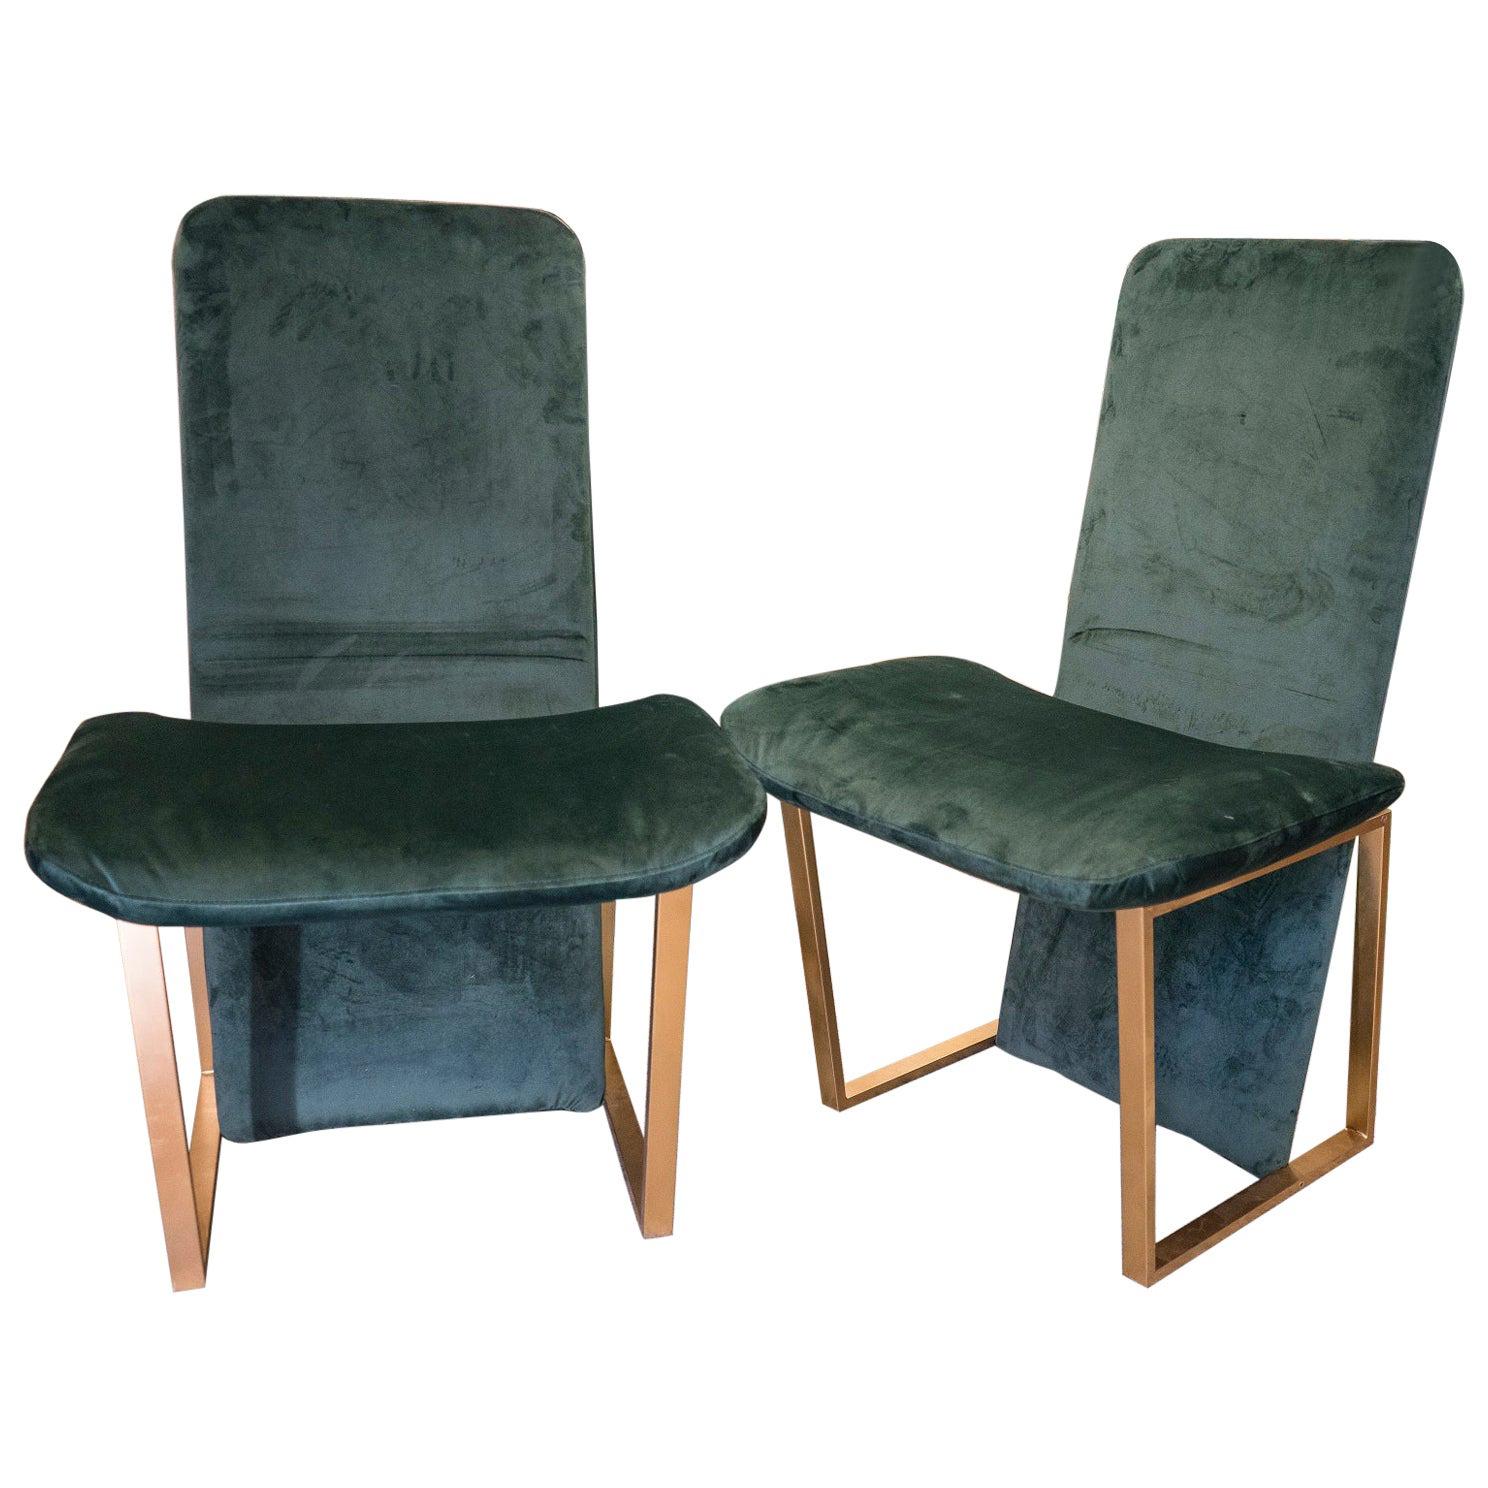 70s Couple Green Chairs, Italian Kazuhide Takahama "Kazuki" Green and Brass